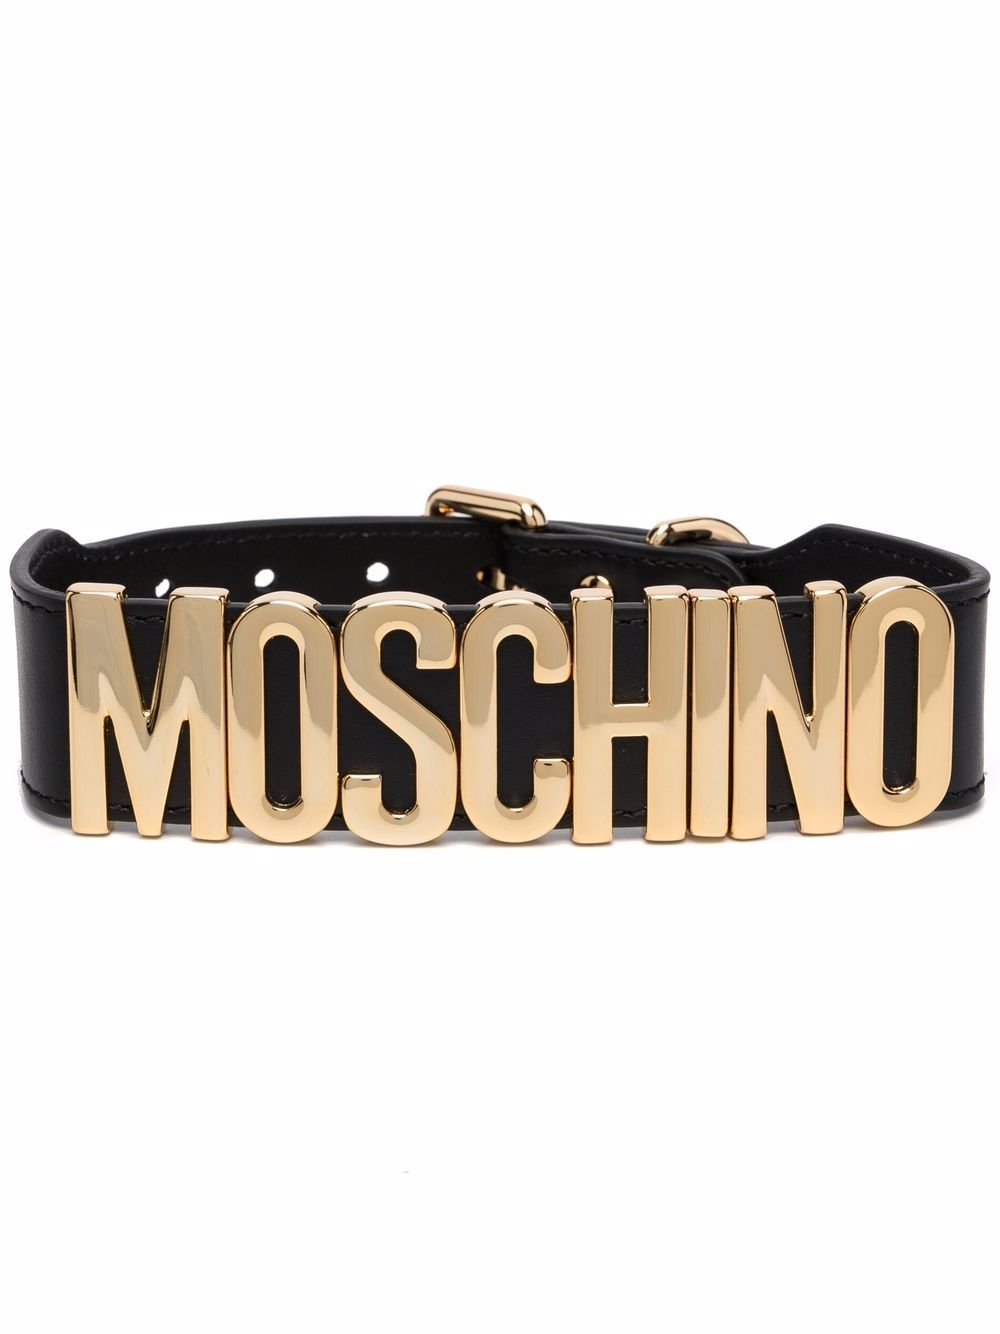 фото Moschino ремень с металлическим логотипом